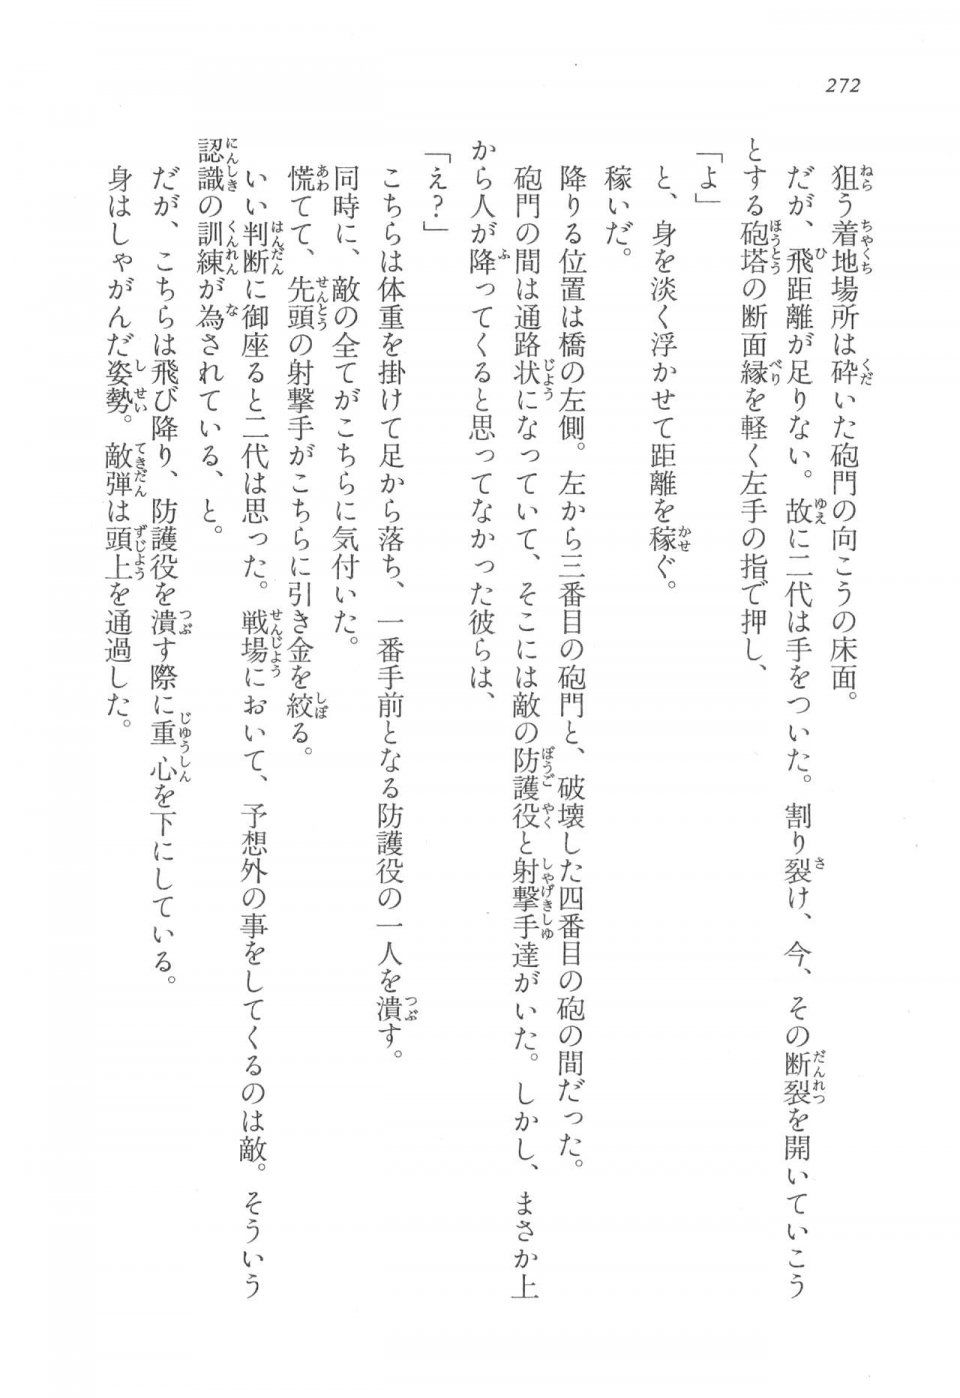 Kyoukai Senjou no Horizon LN Vol 17(7B) - Photo #272